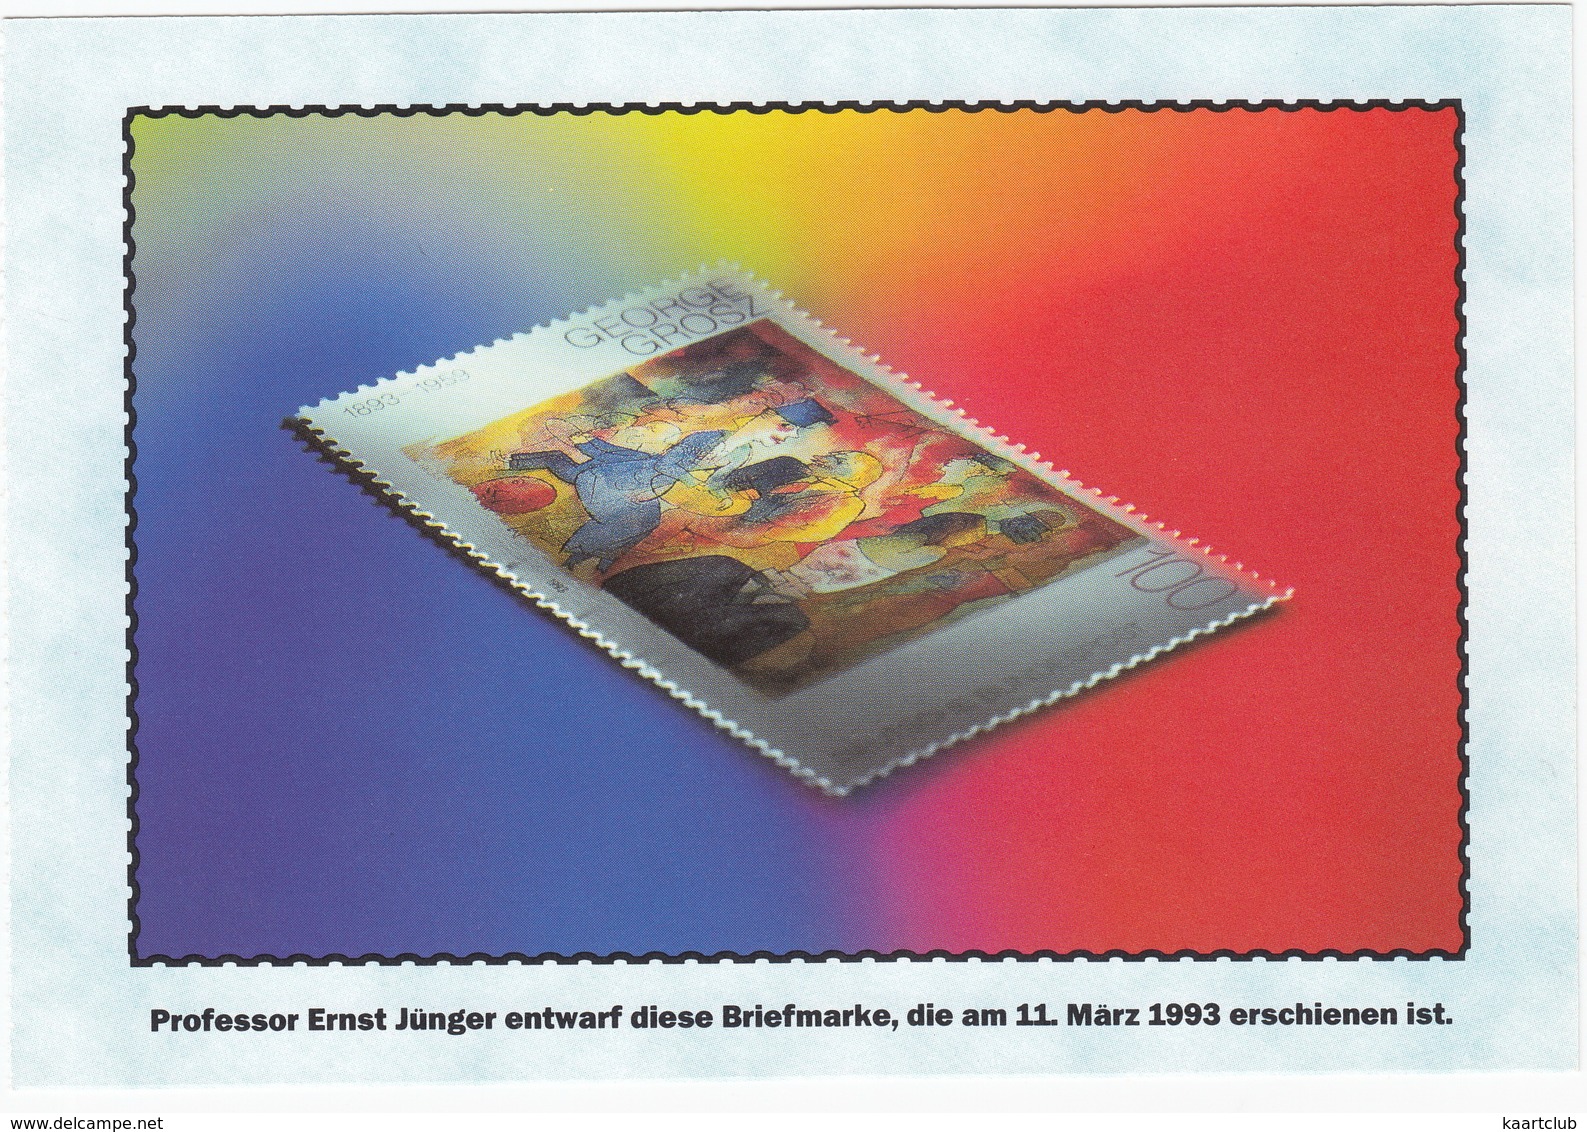 100 Pf. Briefmarke - Prof. Ernst Jünger Entwarf Diese Briefmarke, Die Am 11. Marz 1993 Erschienen Ist - Sammler-Service - Postzegels (afbeeldingen)